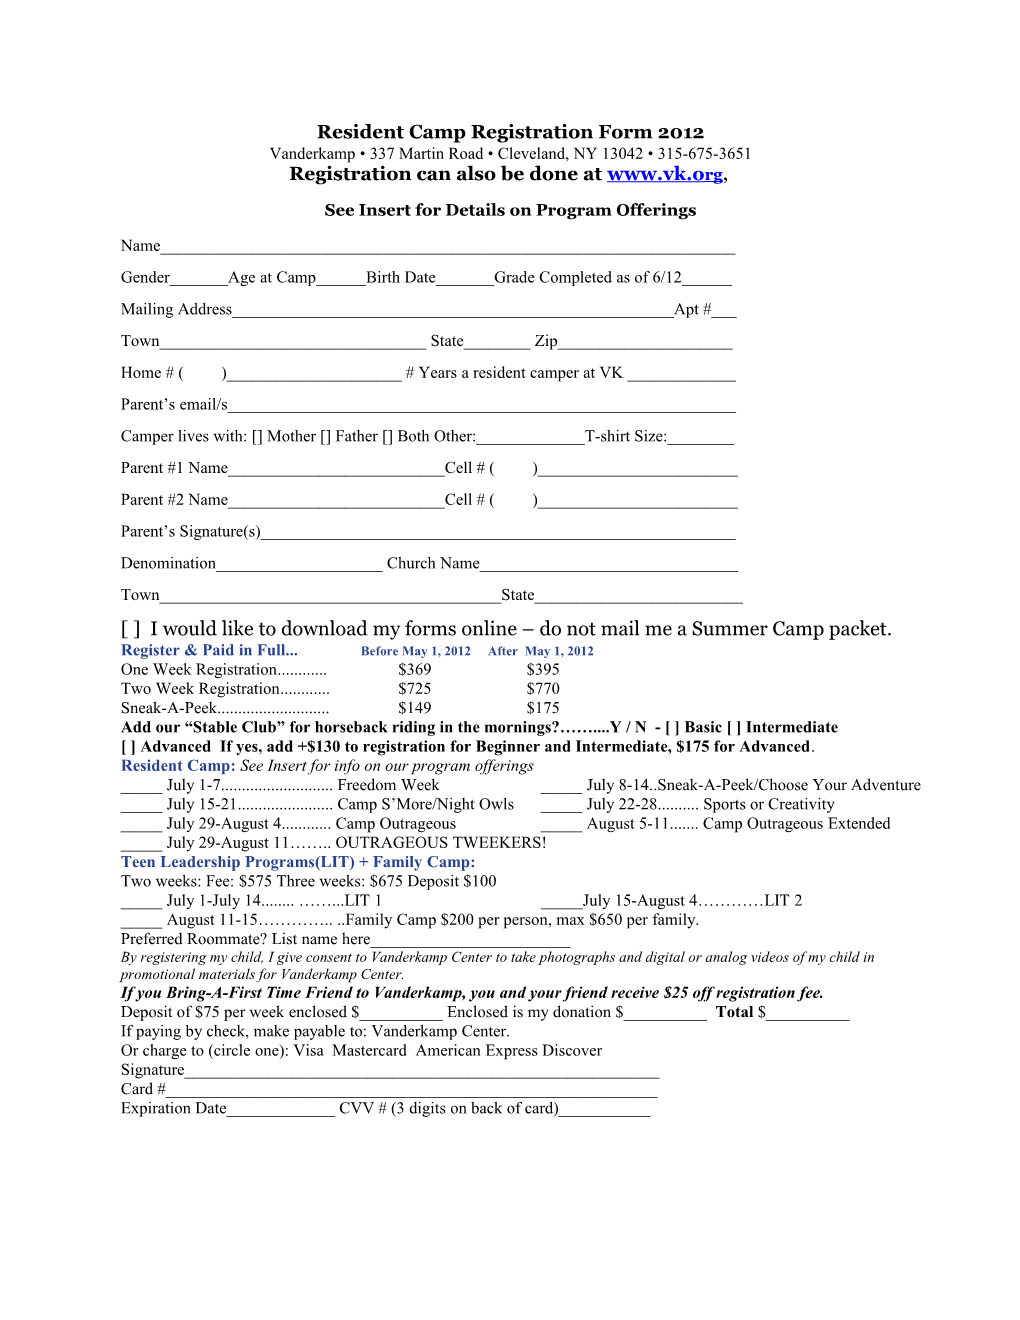 Resident Camp Registration Form 2011